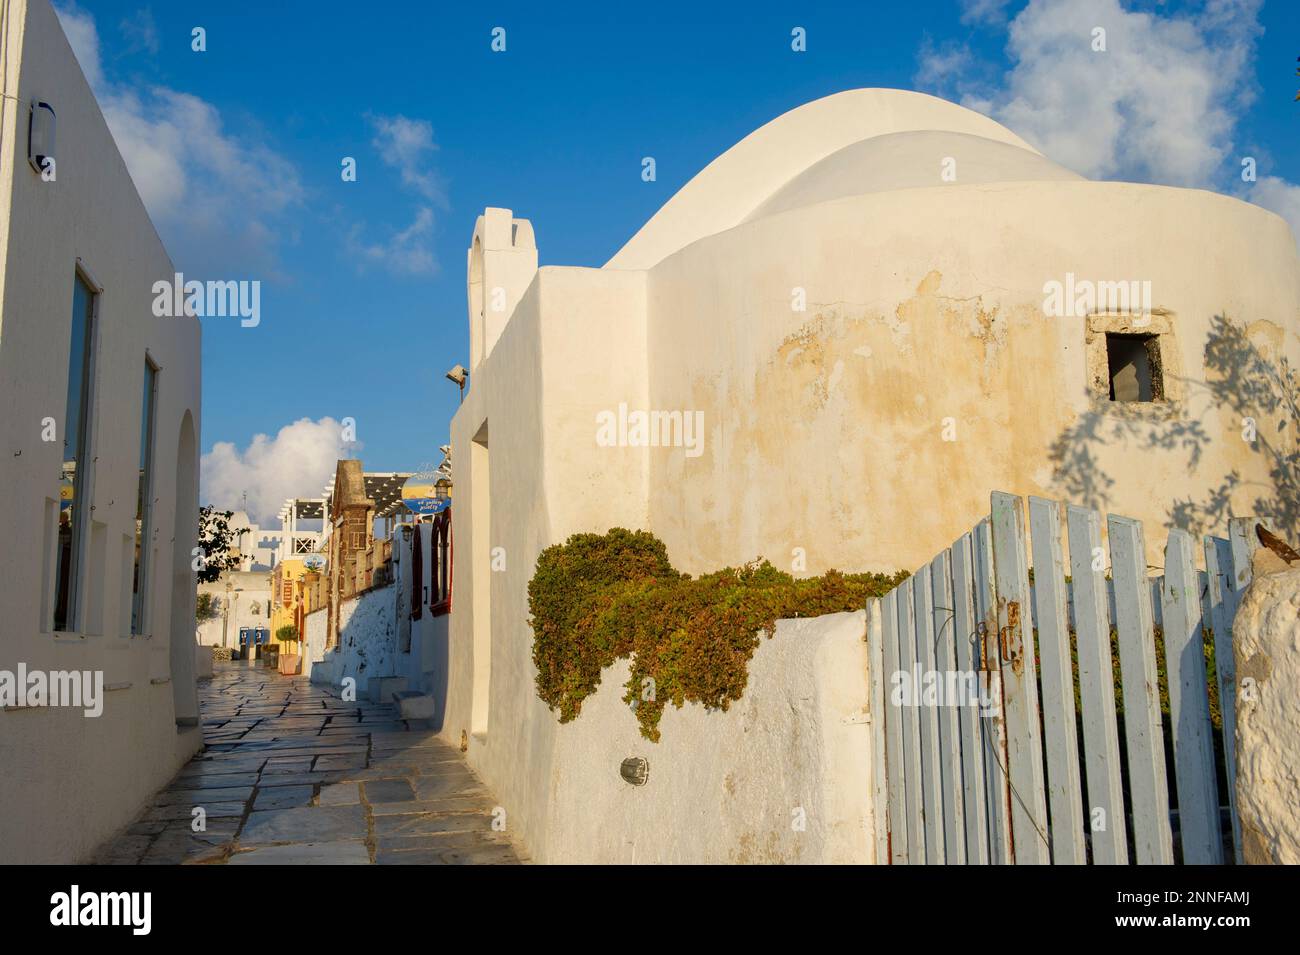 Europe, Grèce, Santorin, Oia. Chemin étroit en pierre dans une ville en Grèce. Banque D'Images